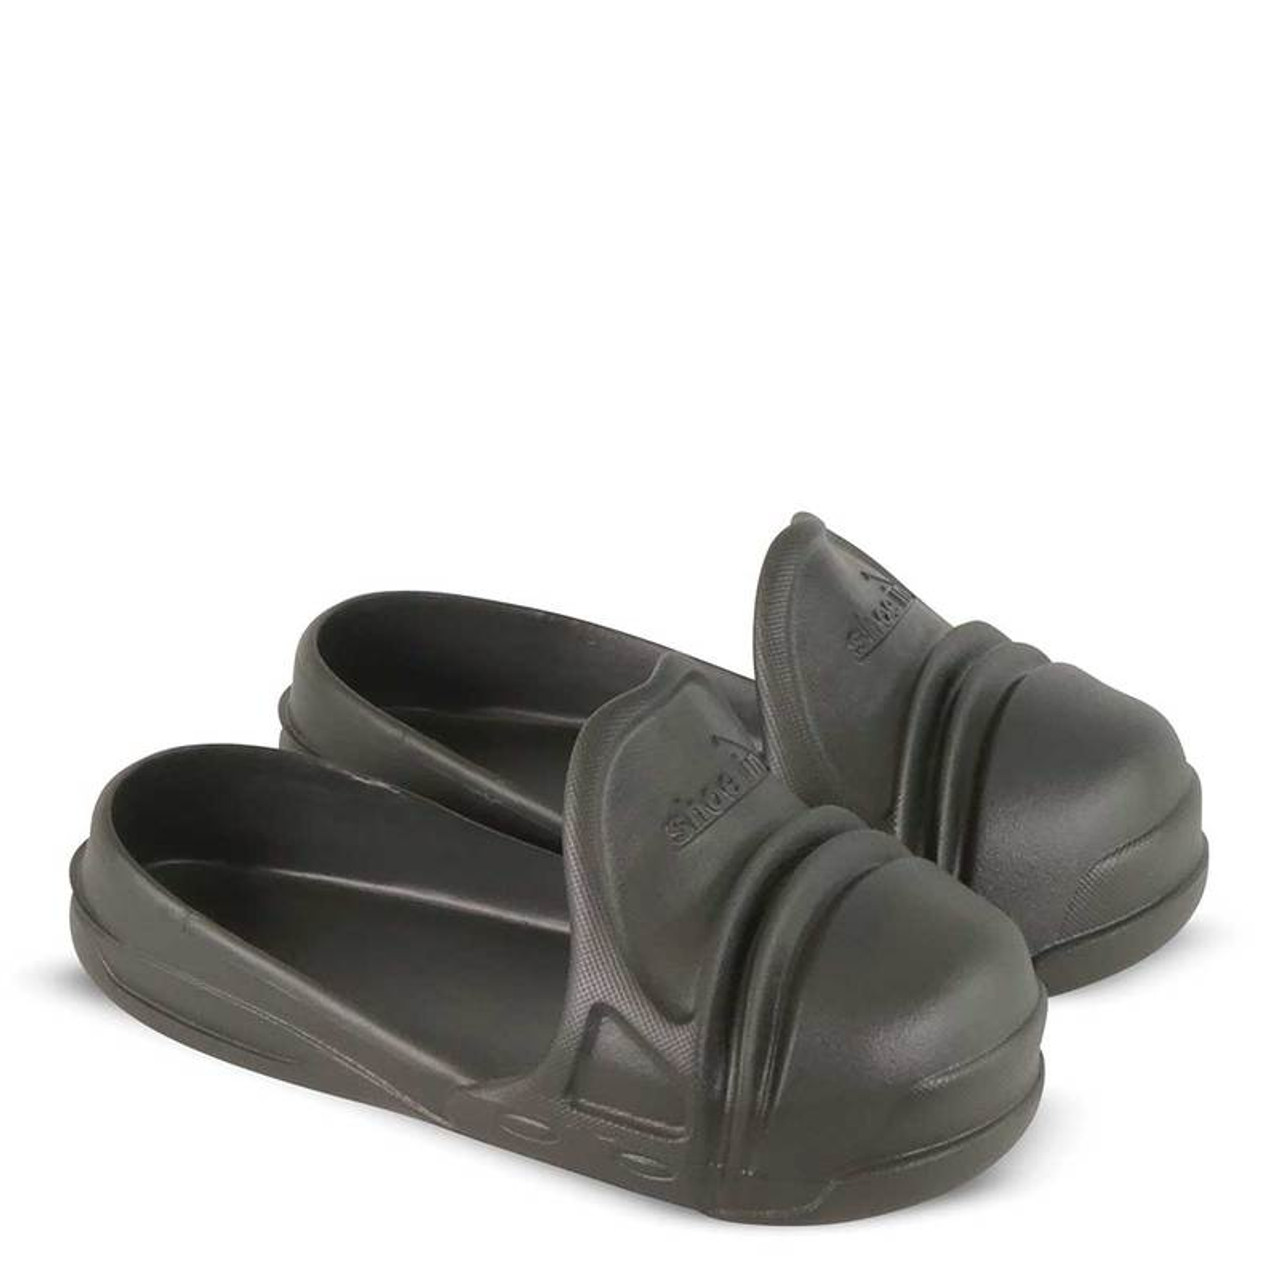 Thorogood Men's Shoe In Overshoe - Charcoal - Chaar